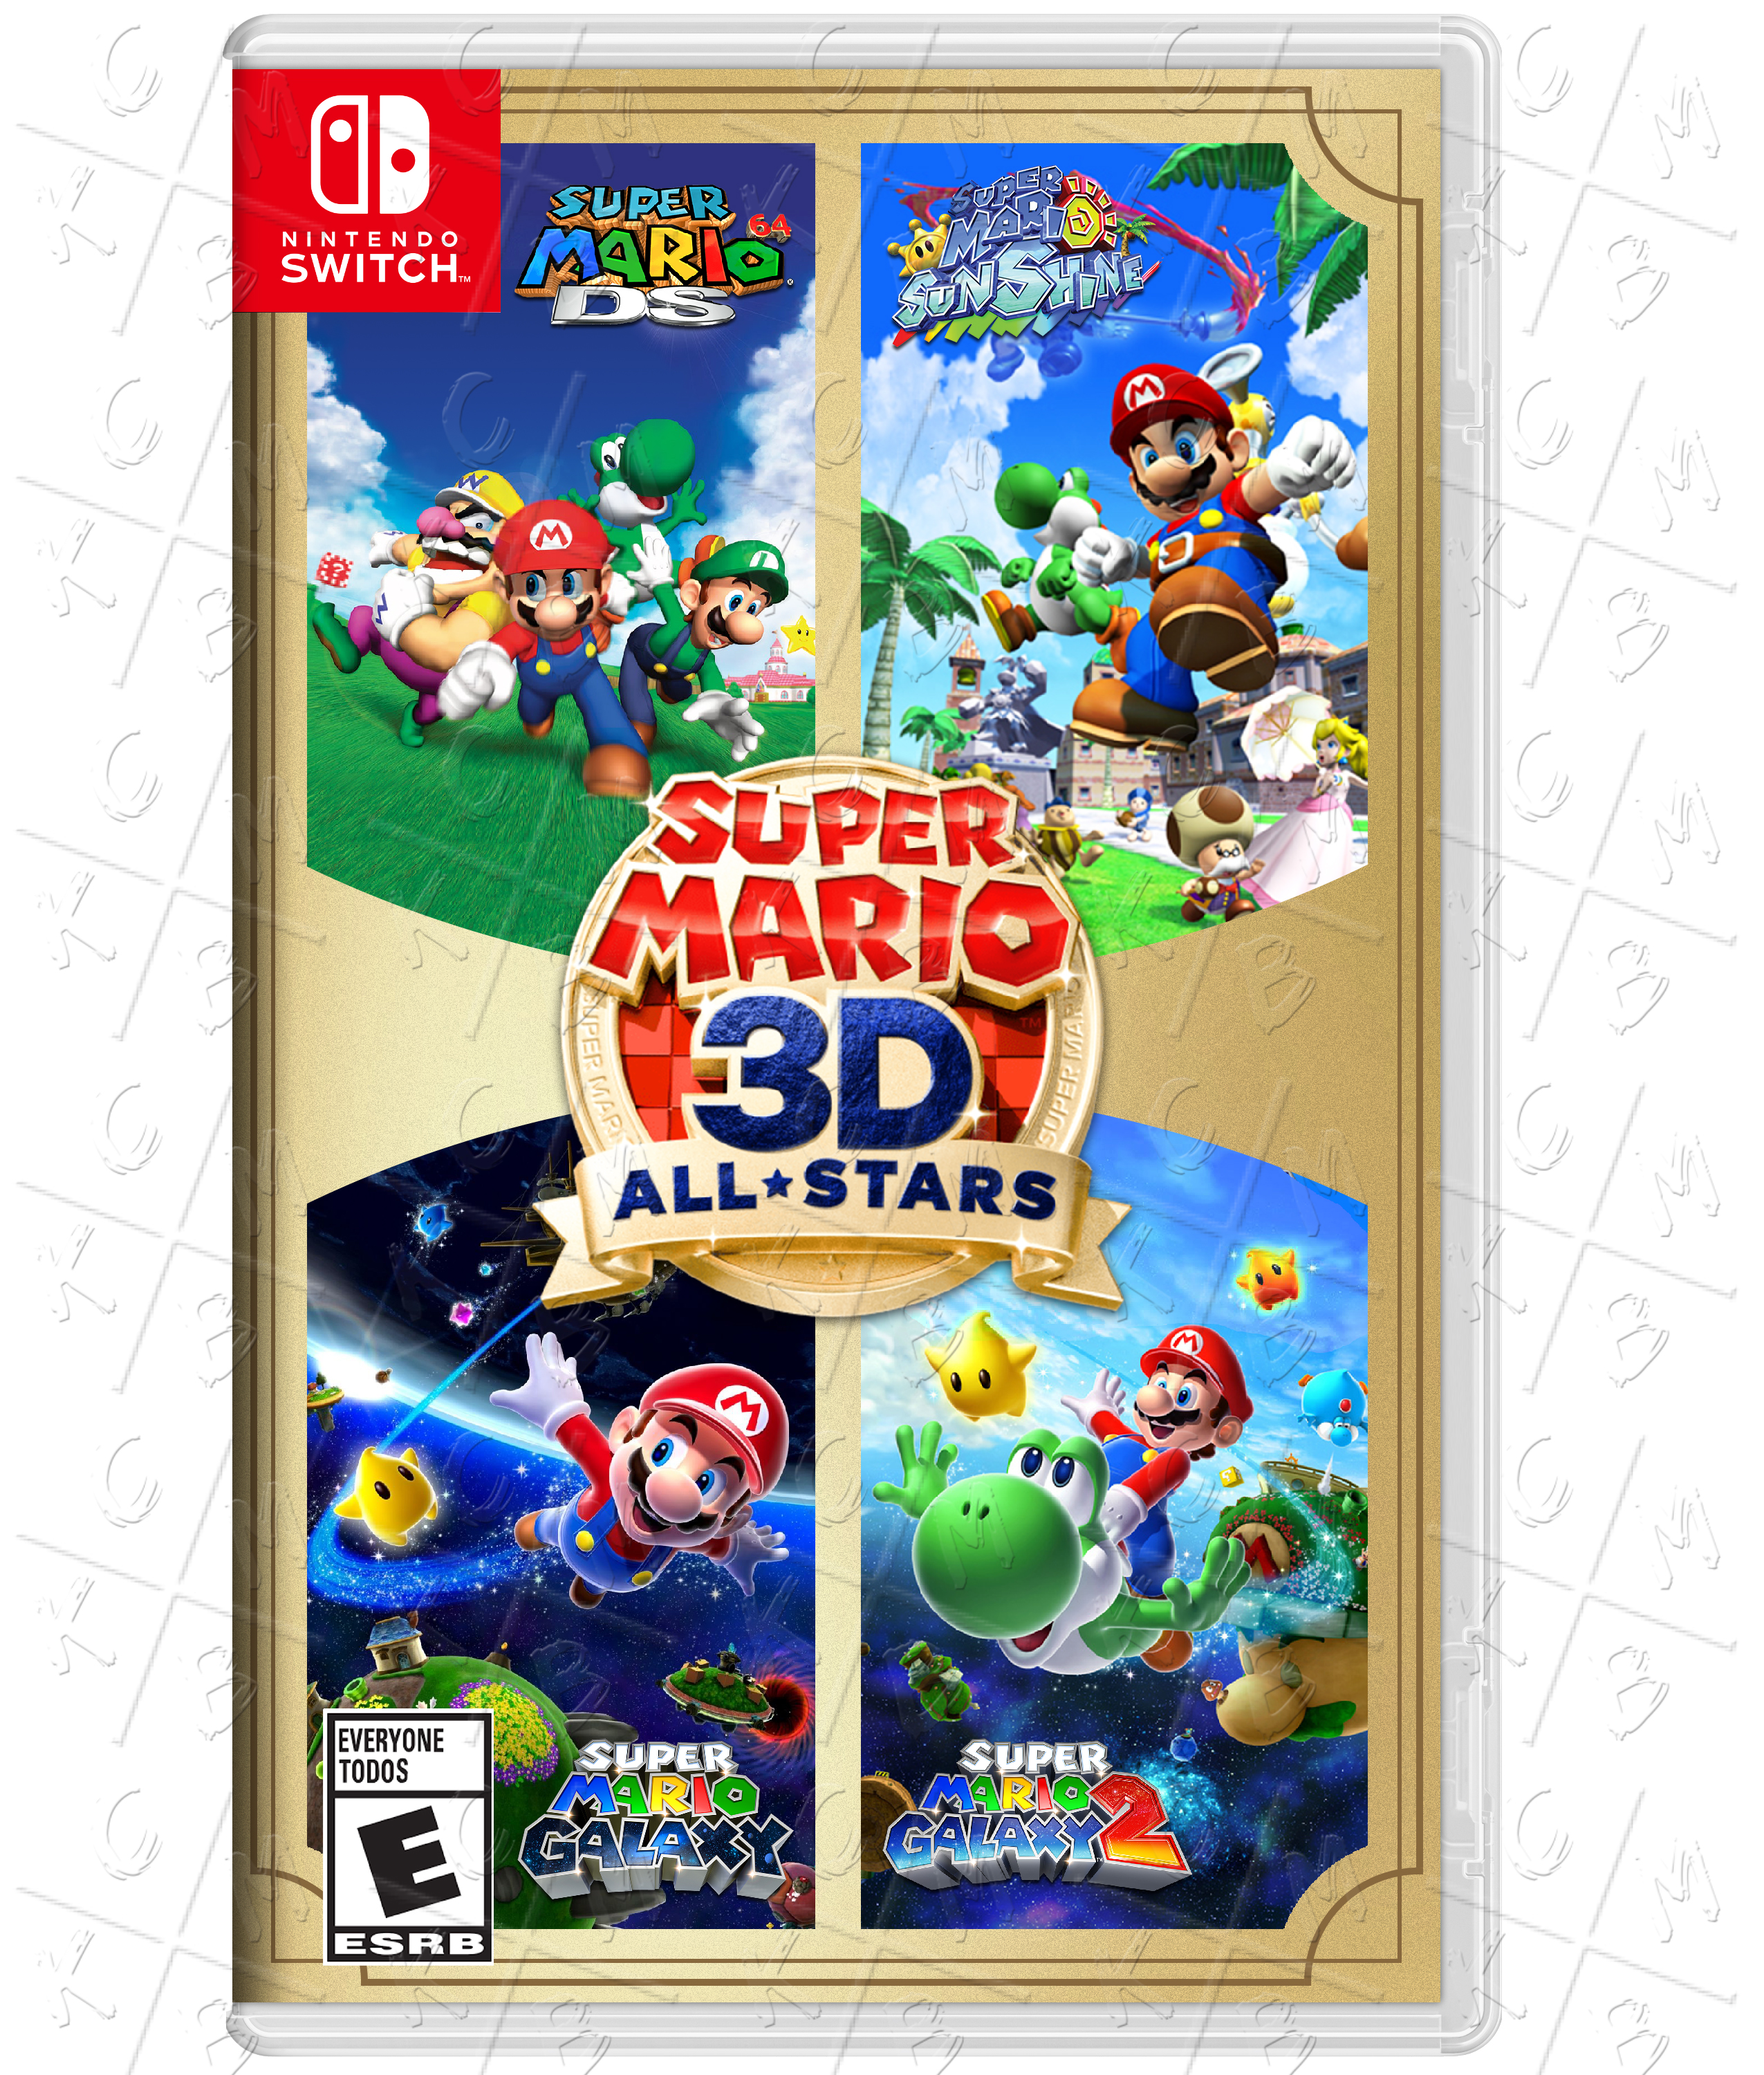 Super Mario All-Stars+World Custom PT-BR Boxart by BMatSantos on DeviantArt